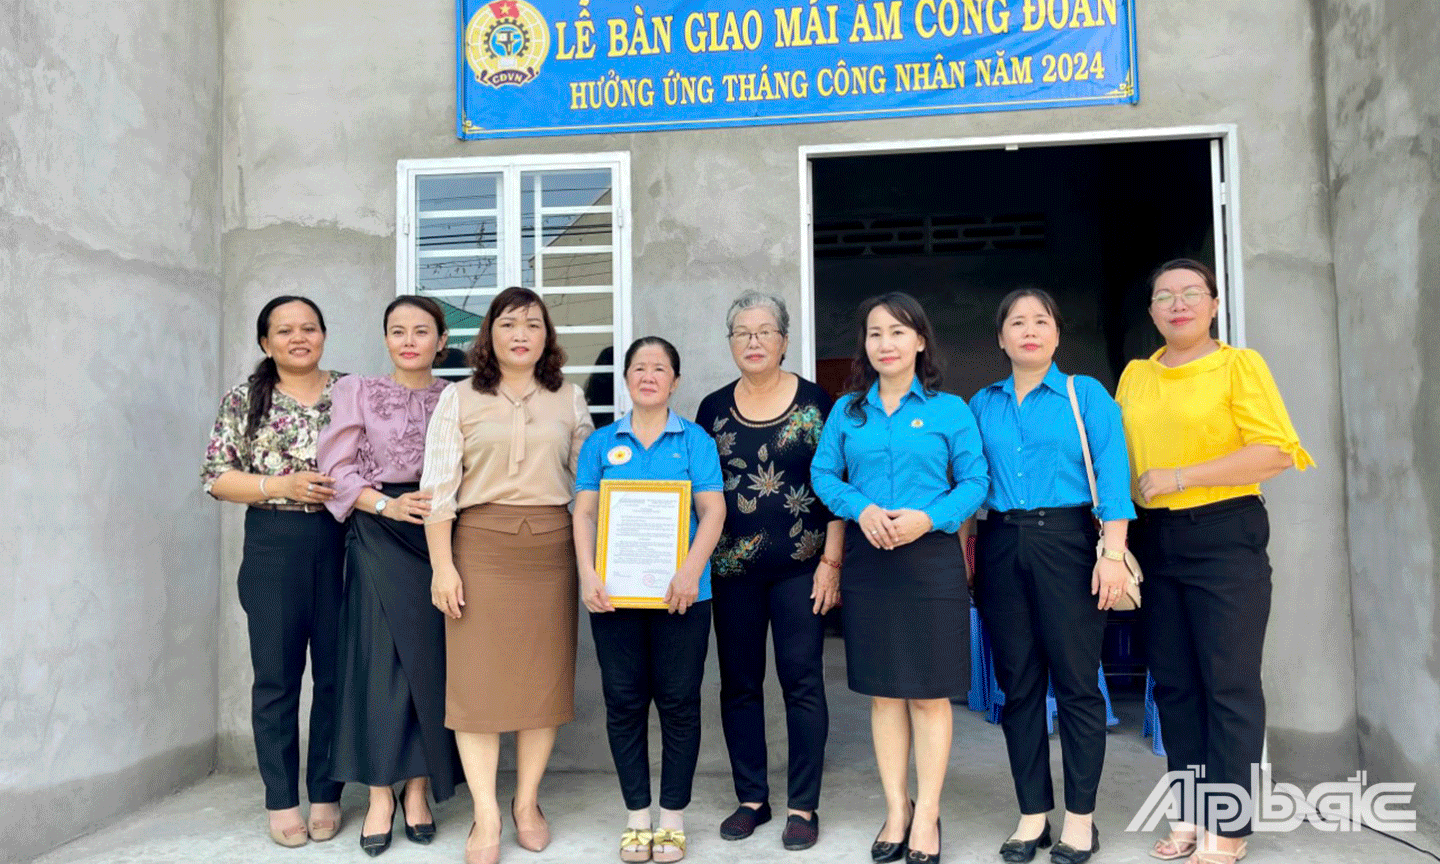 Gia đình chị Nguyễn Thị Thanh Thủy cùng đại biểu chụp ảnh lưu niệm trước ngôi nhà Mái ấm Công đoàn